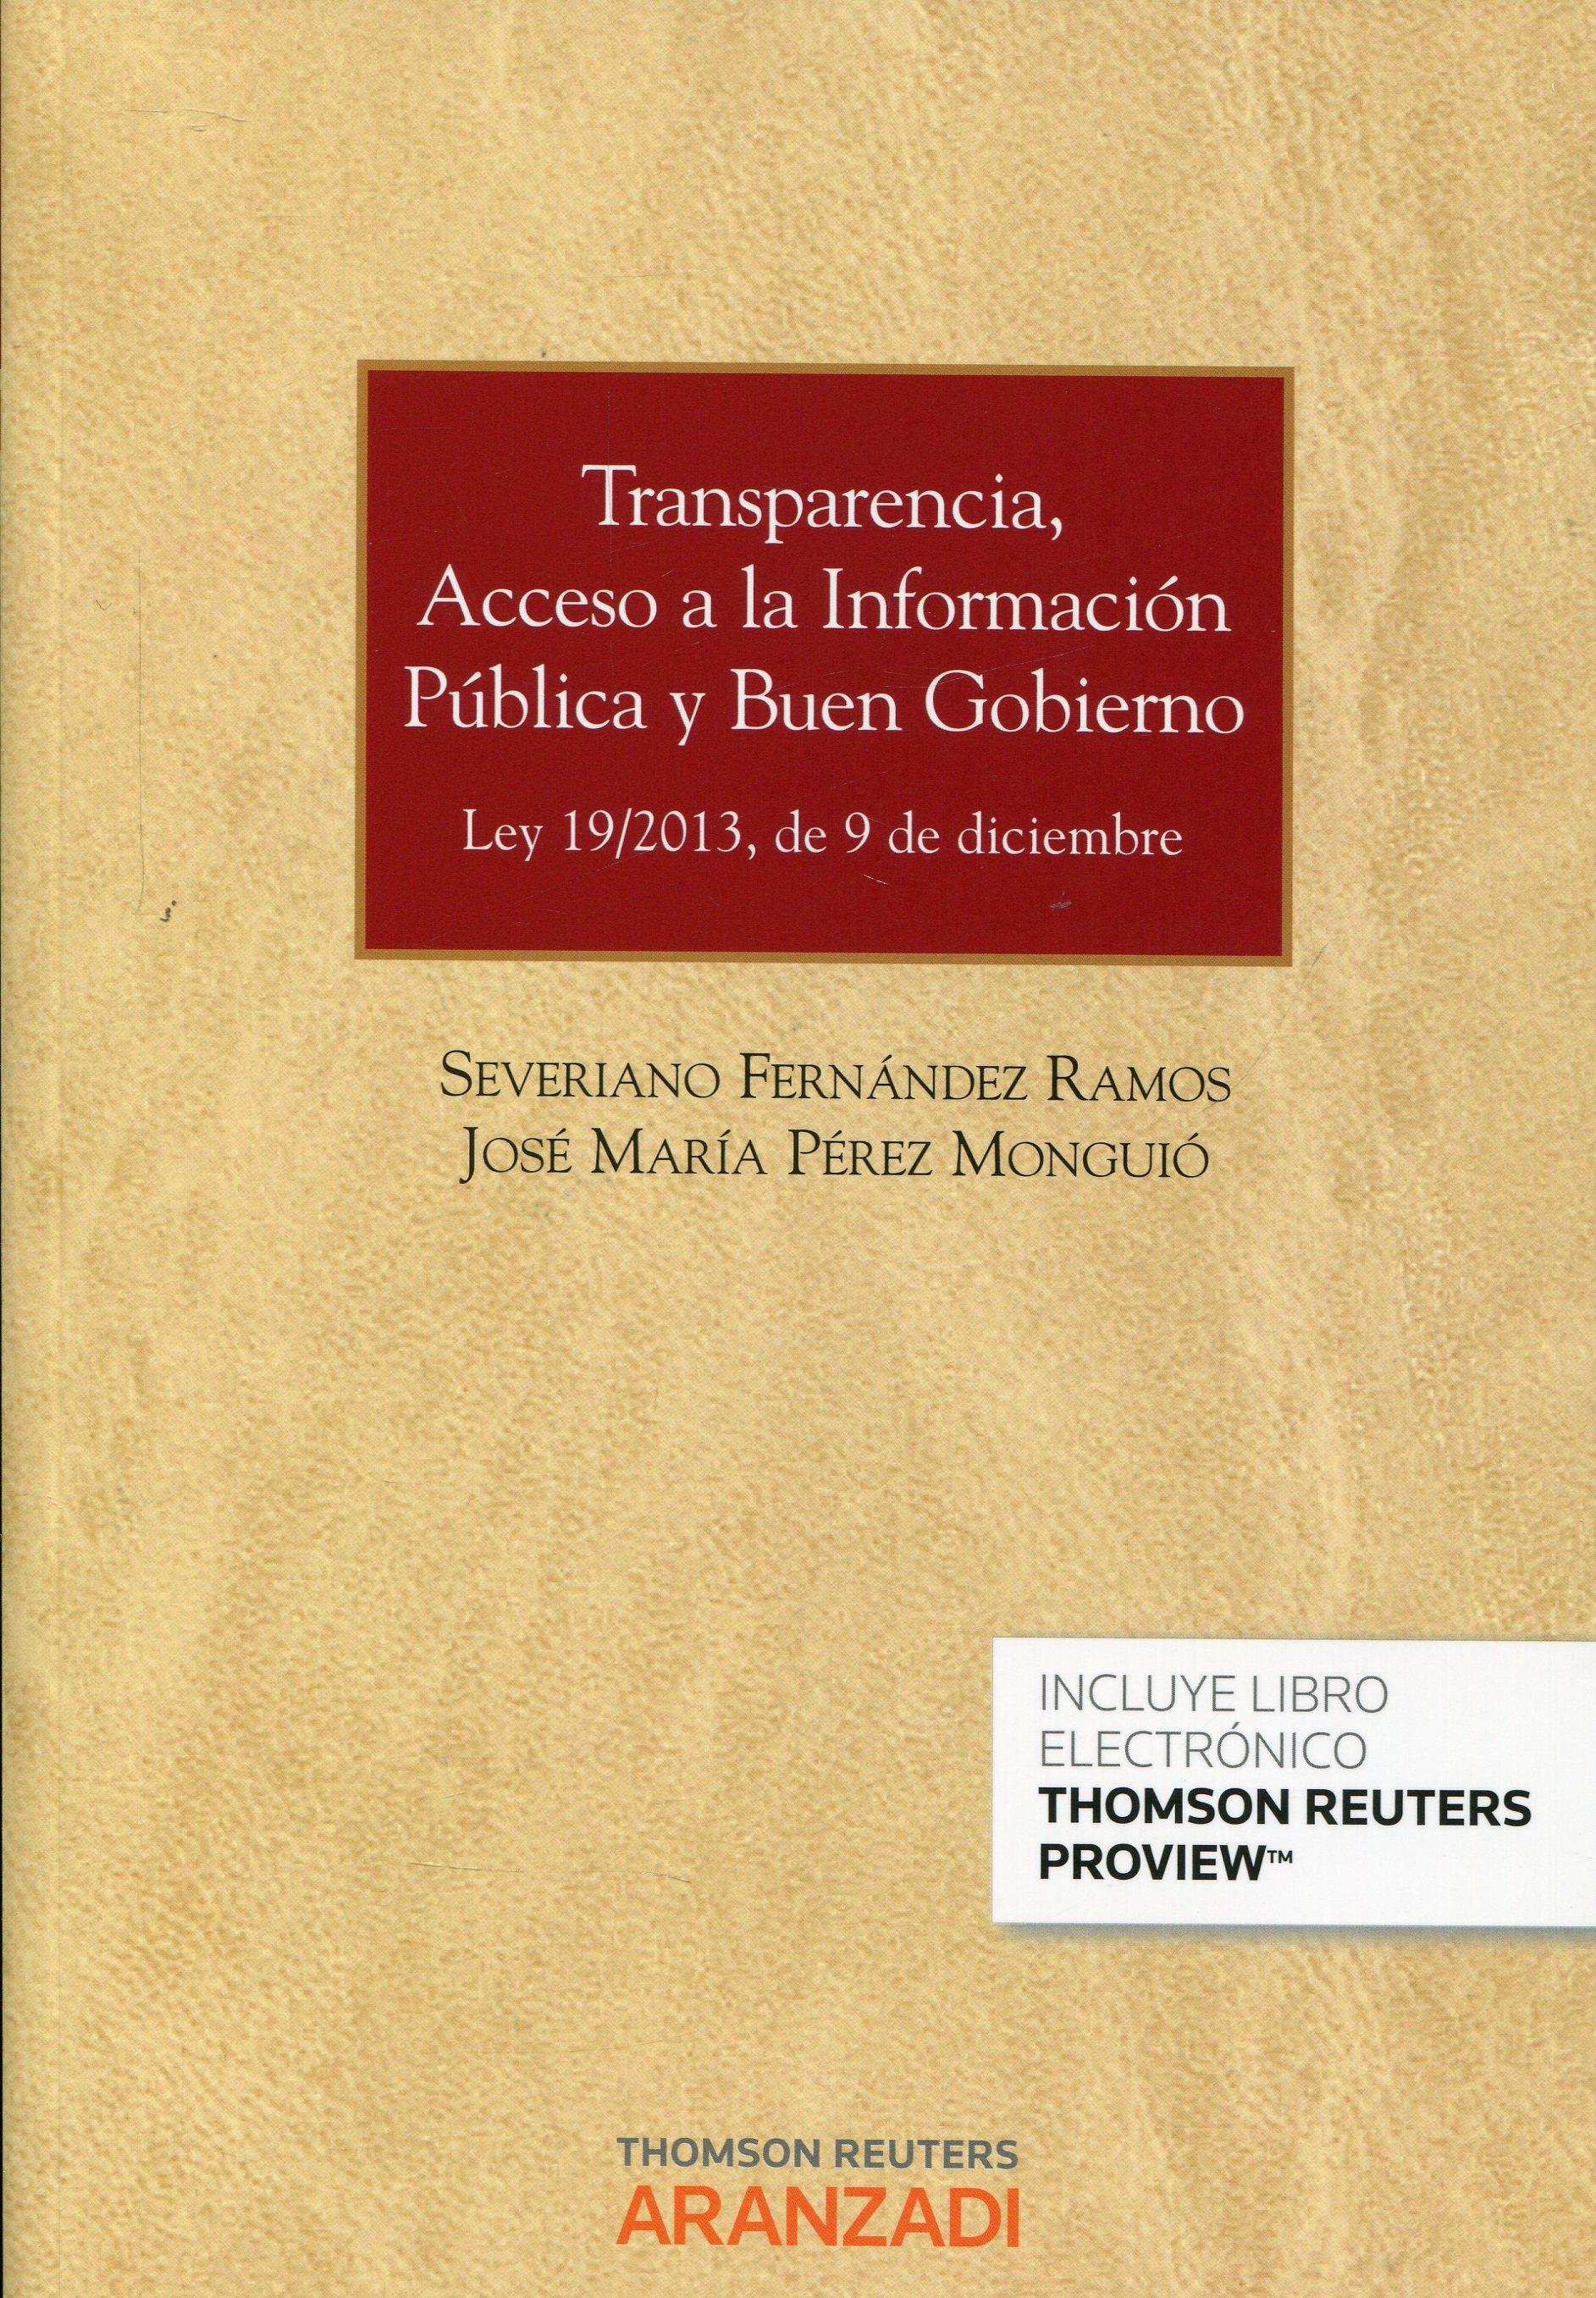 Trasnparencia, acceso a la información pública y buen gobierno "Ley 19/2013, de 9 de diciembre"